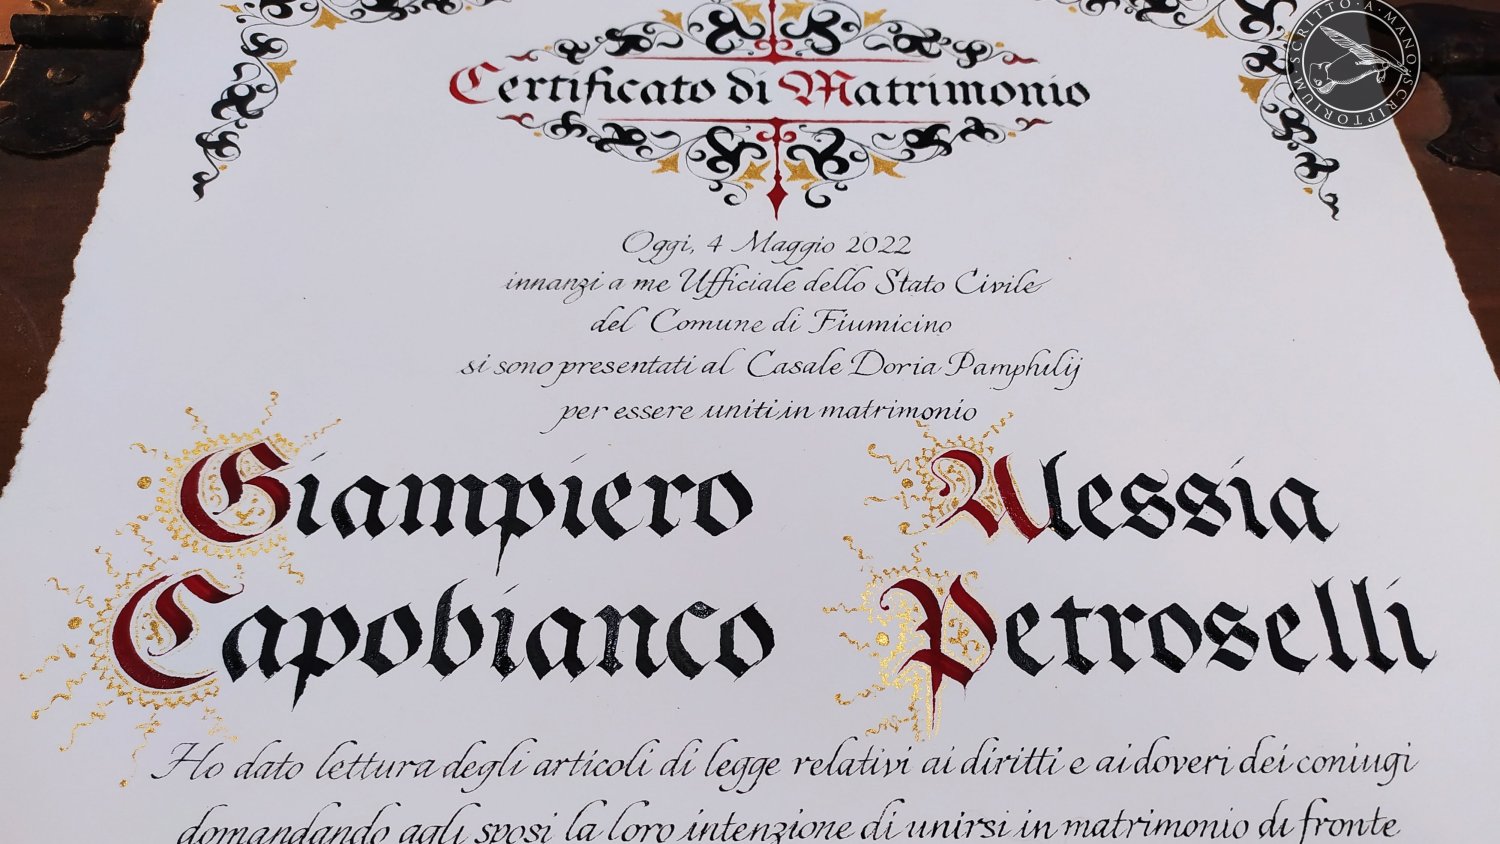 Charta Capobianco